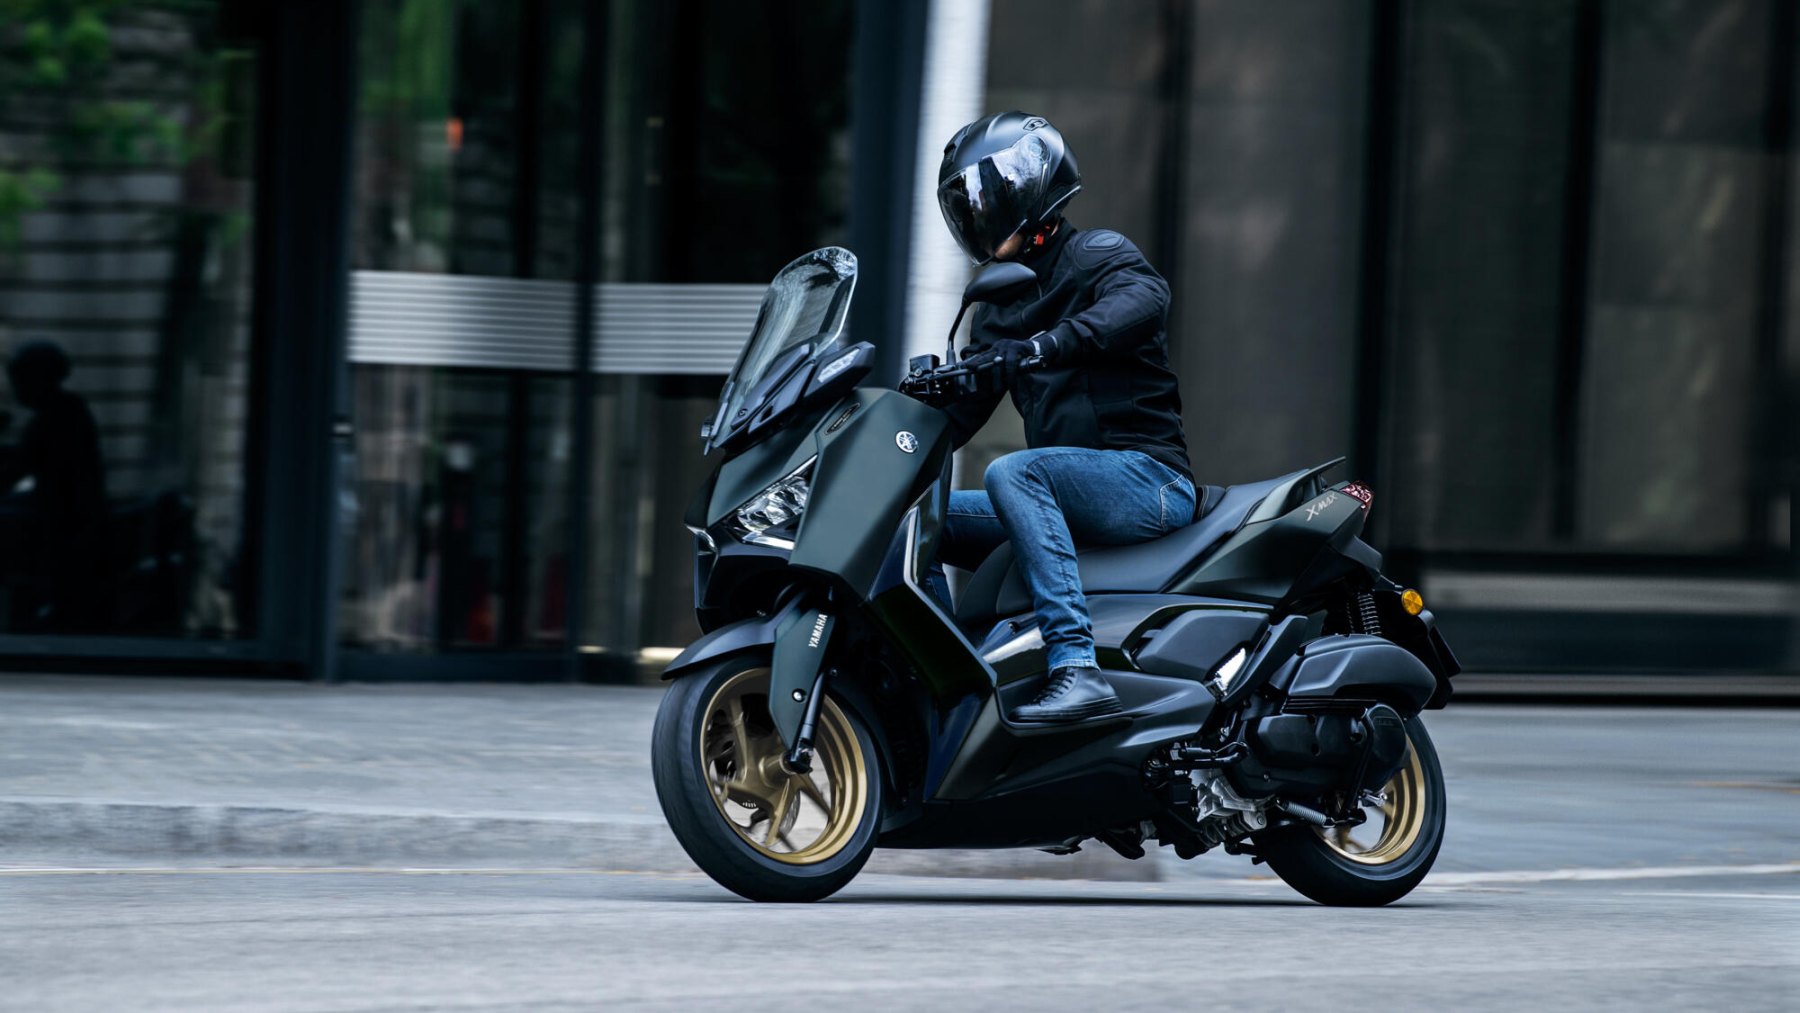 Vista dinámica del Yamaha X-Max 125cc en entorno urbano.